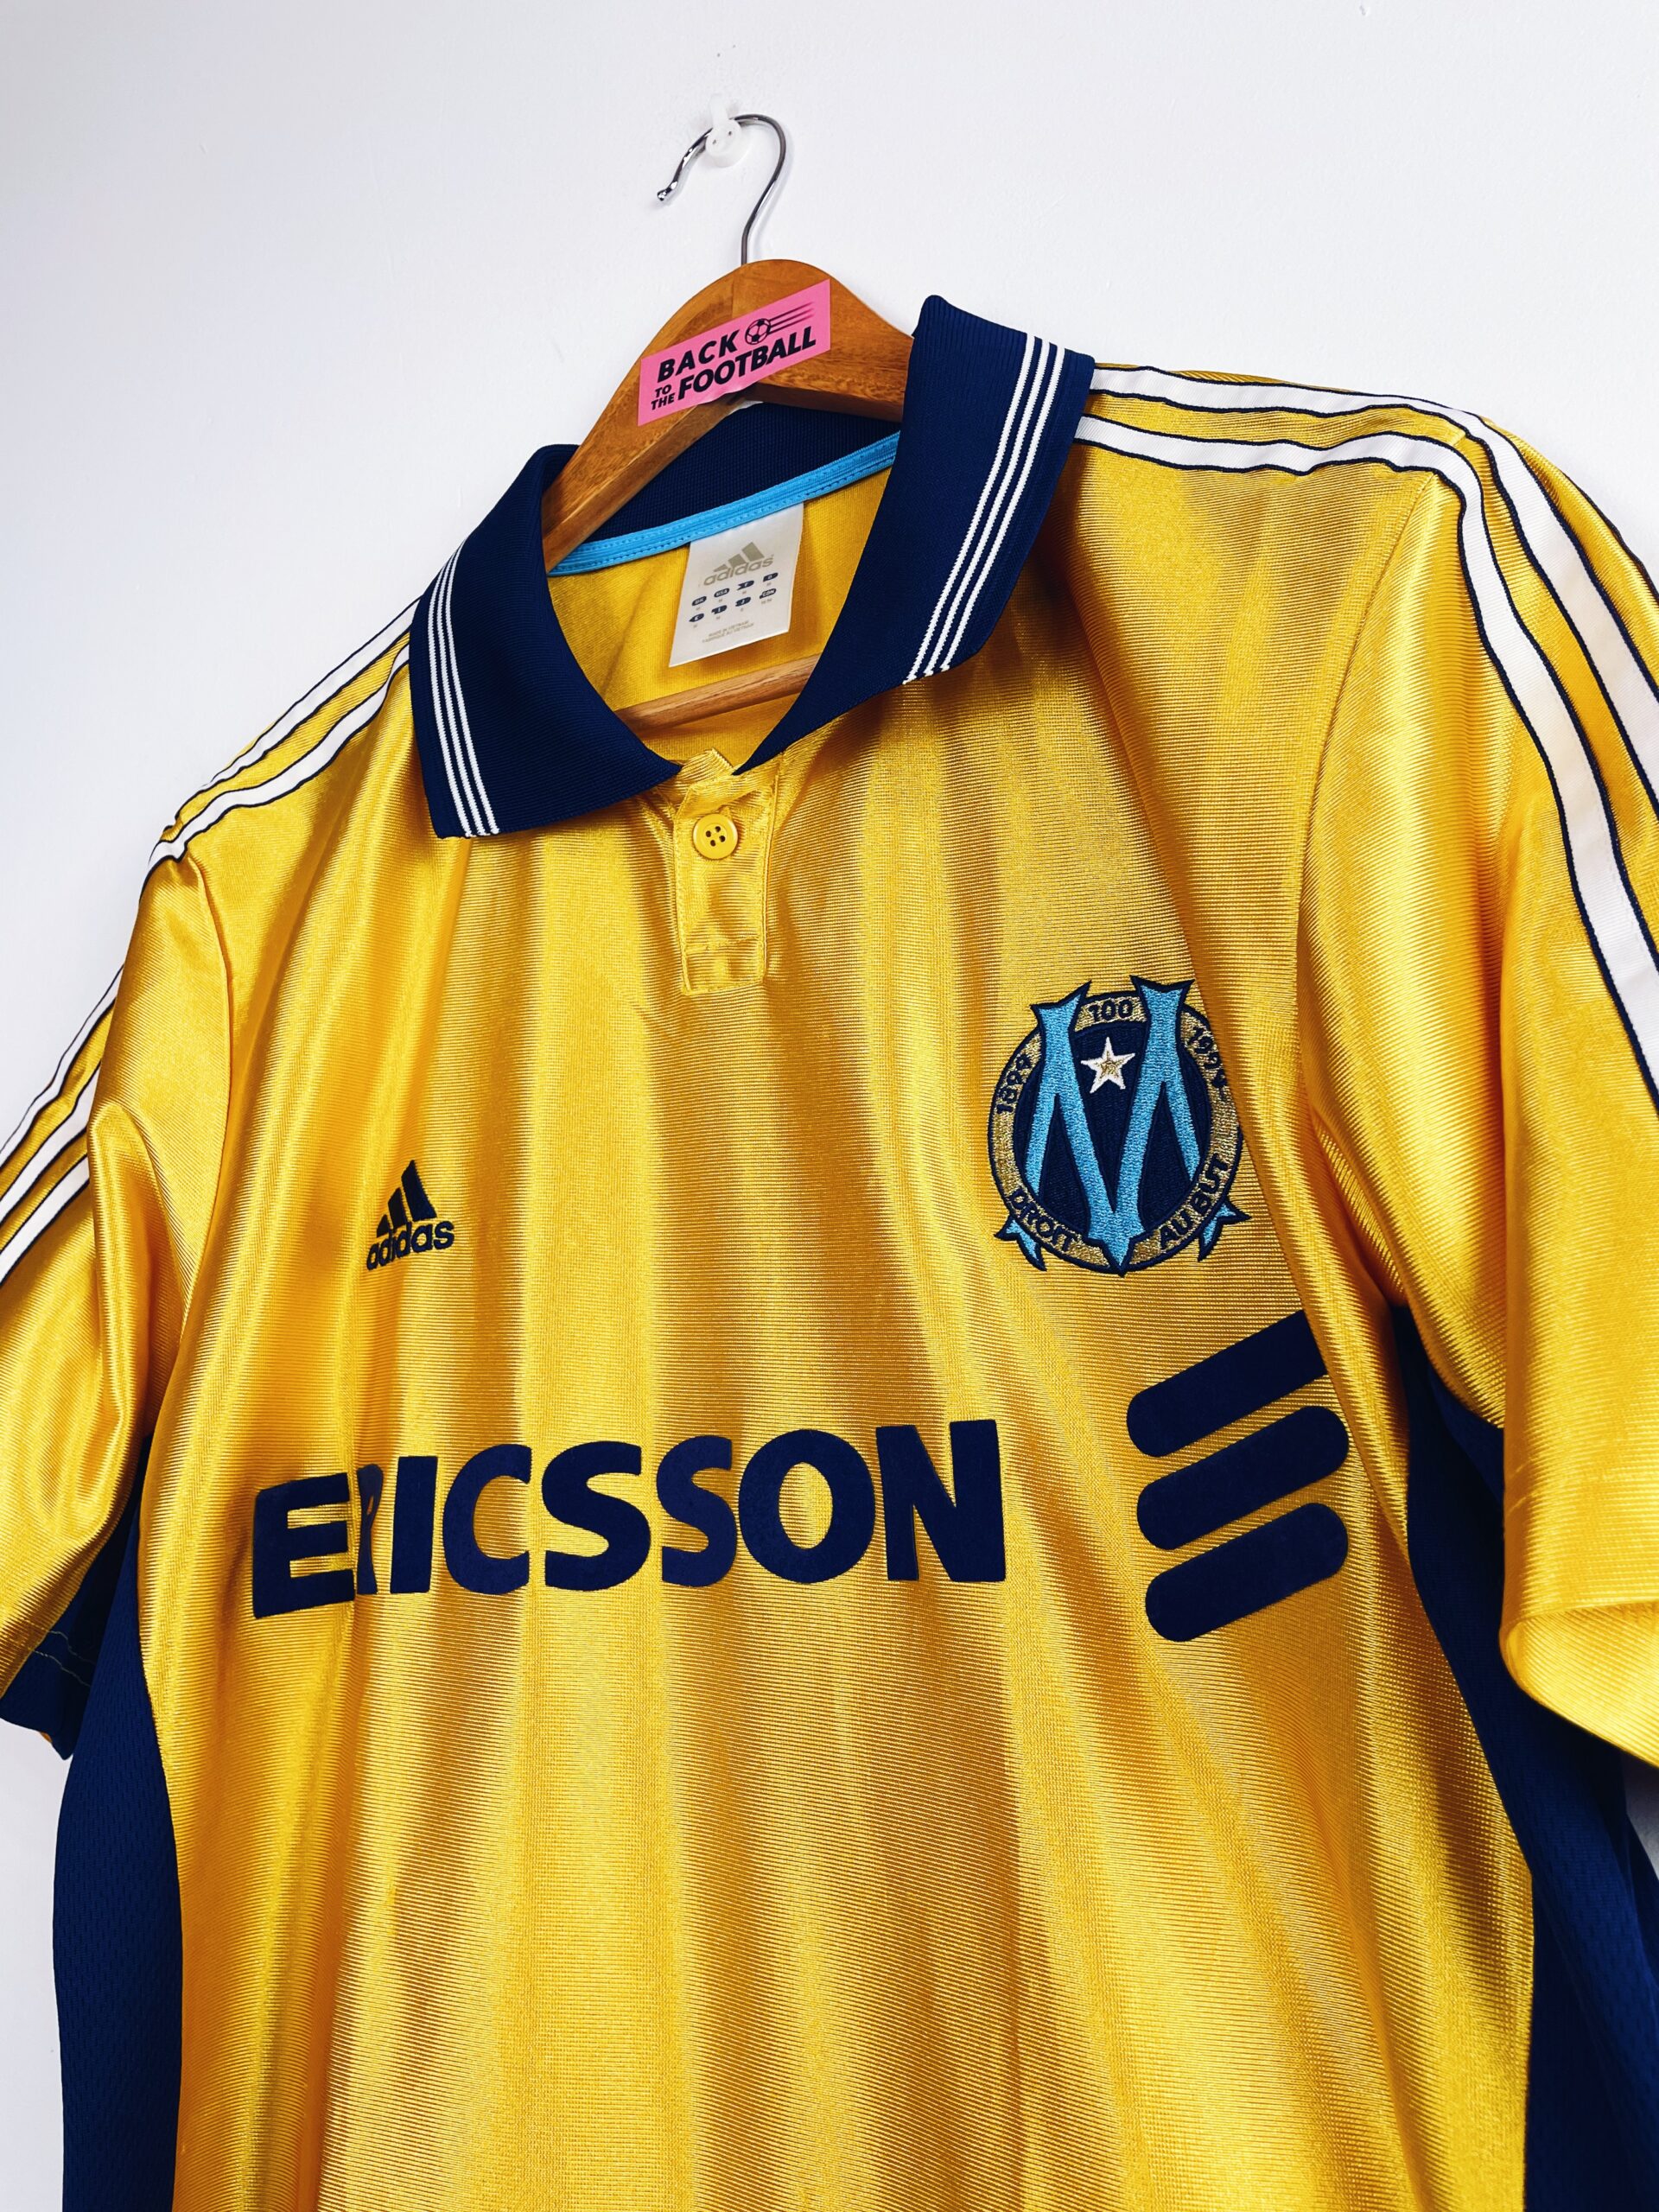 1998-1999 / Olympique de Marseille 🇫🇷 / L